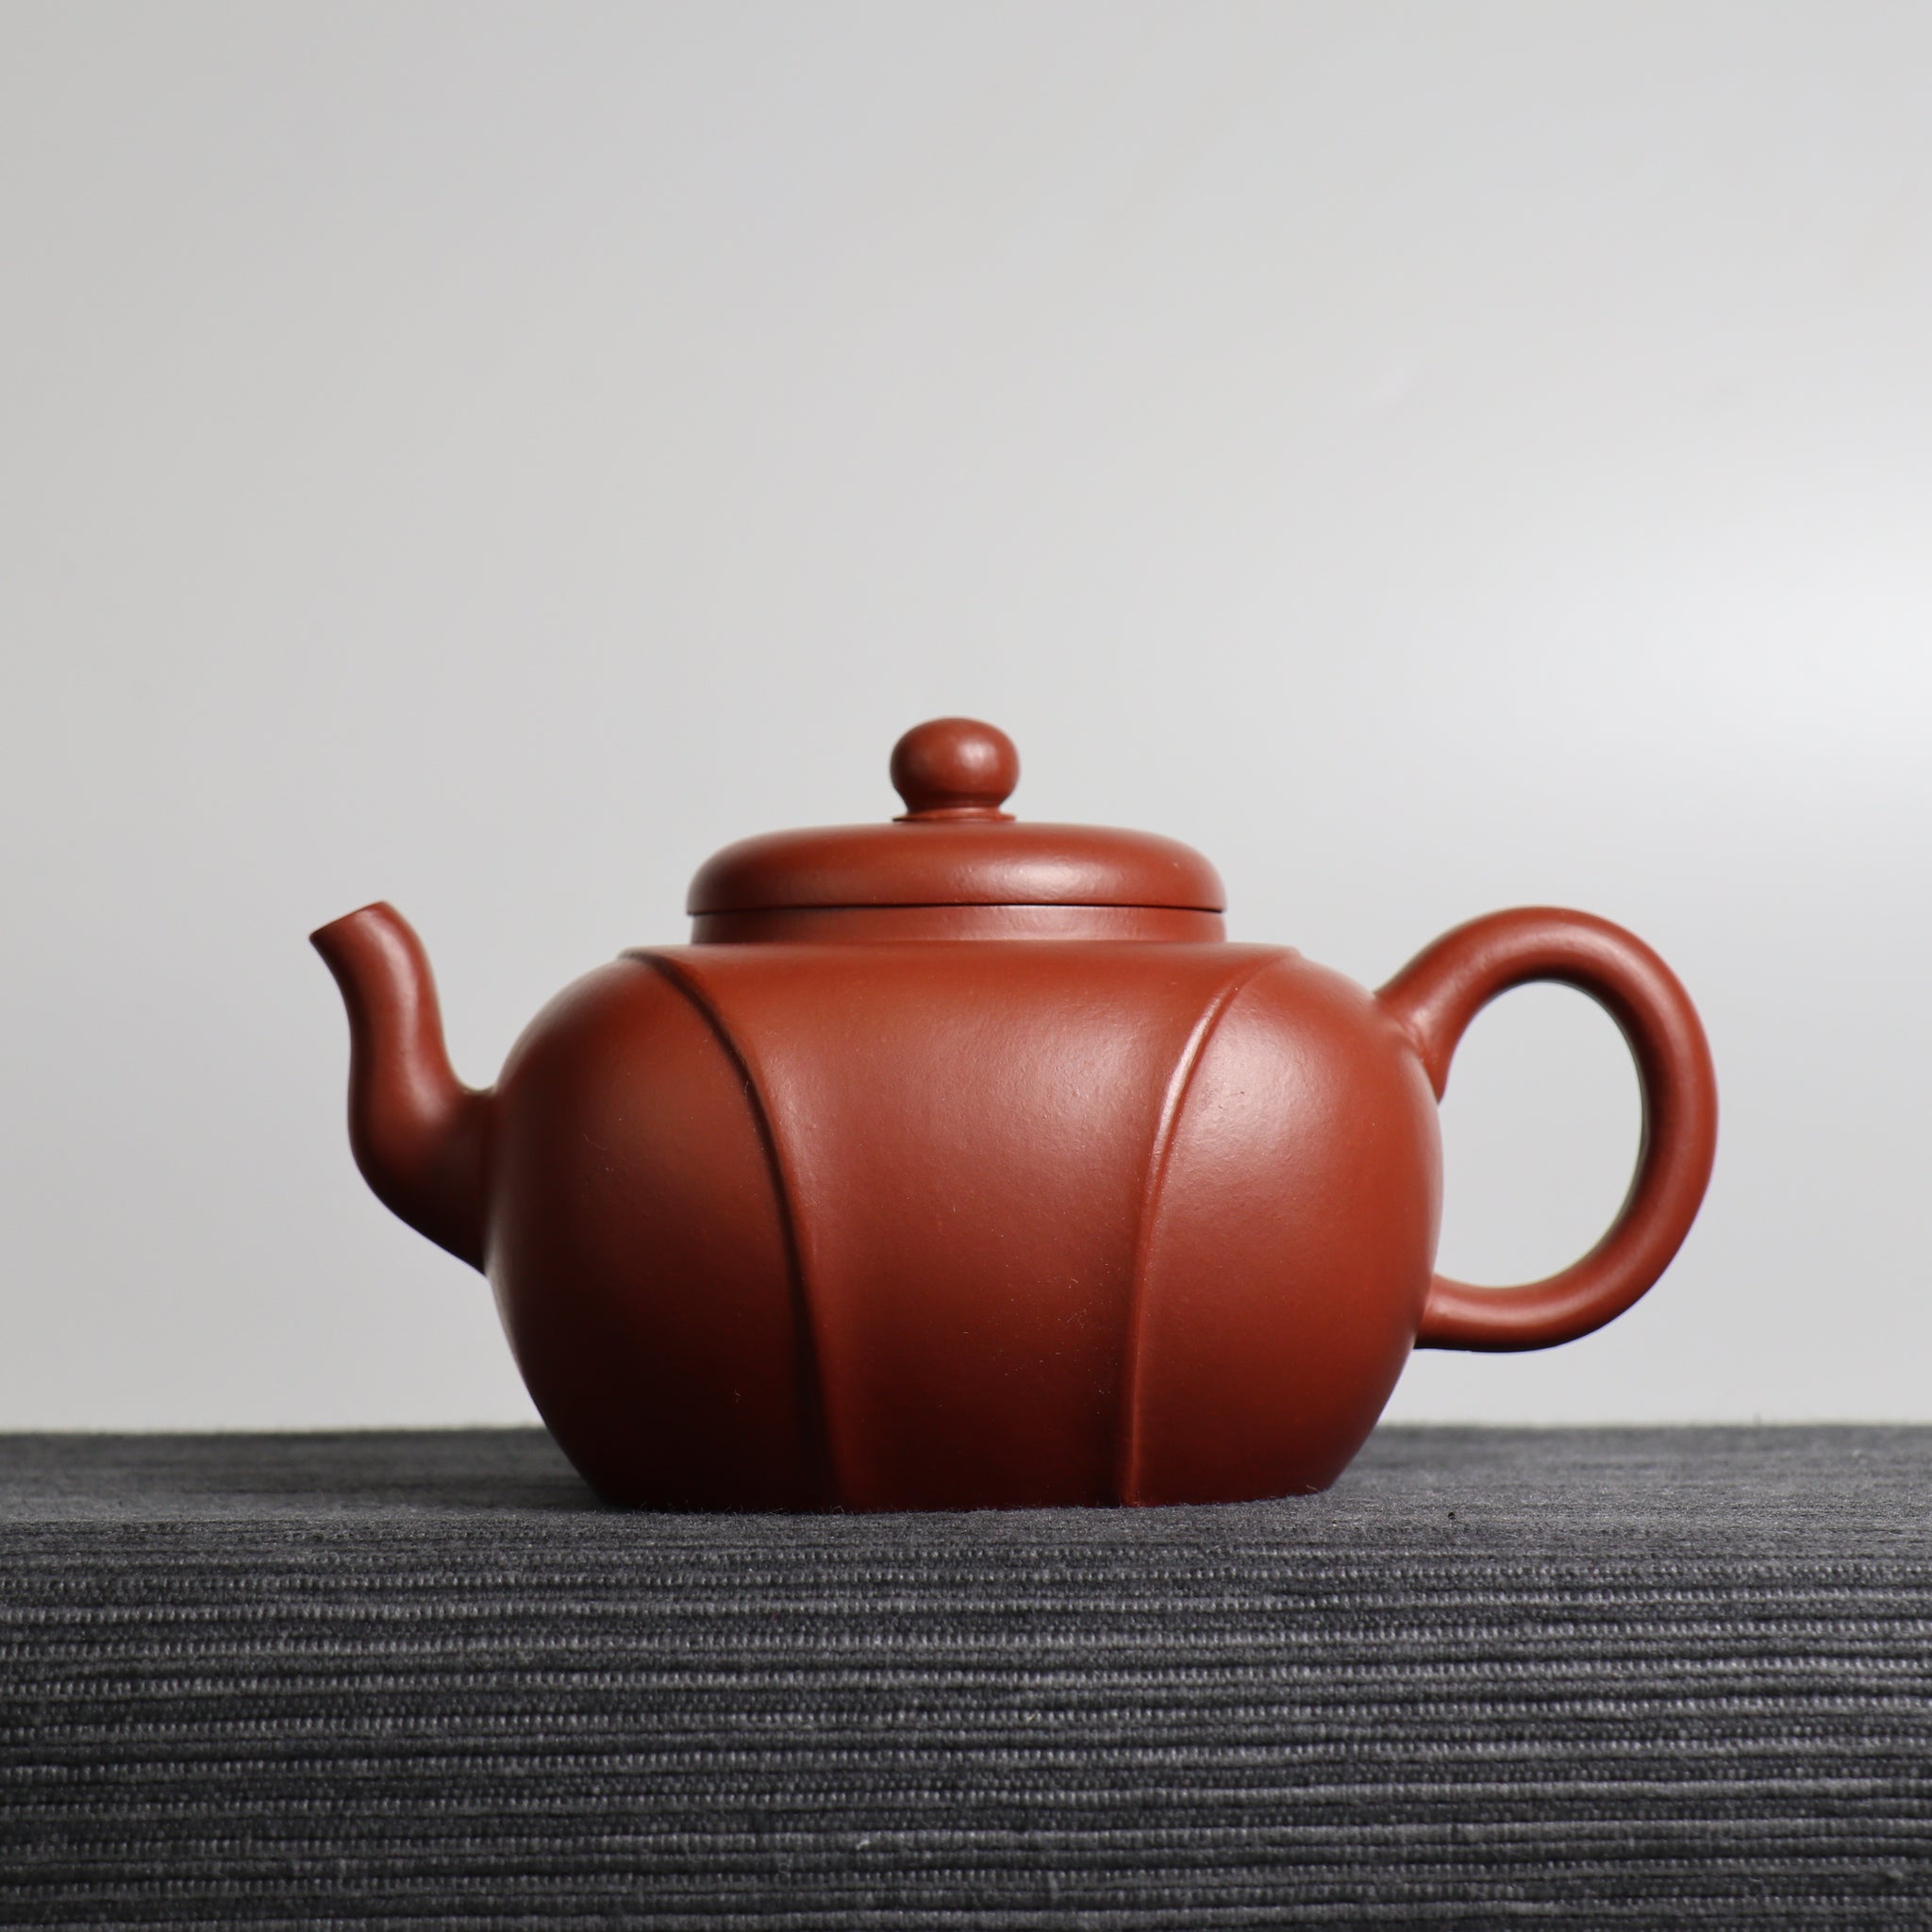 【龍帶】原礦大紅袍茶壺